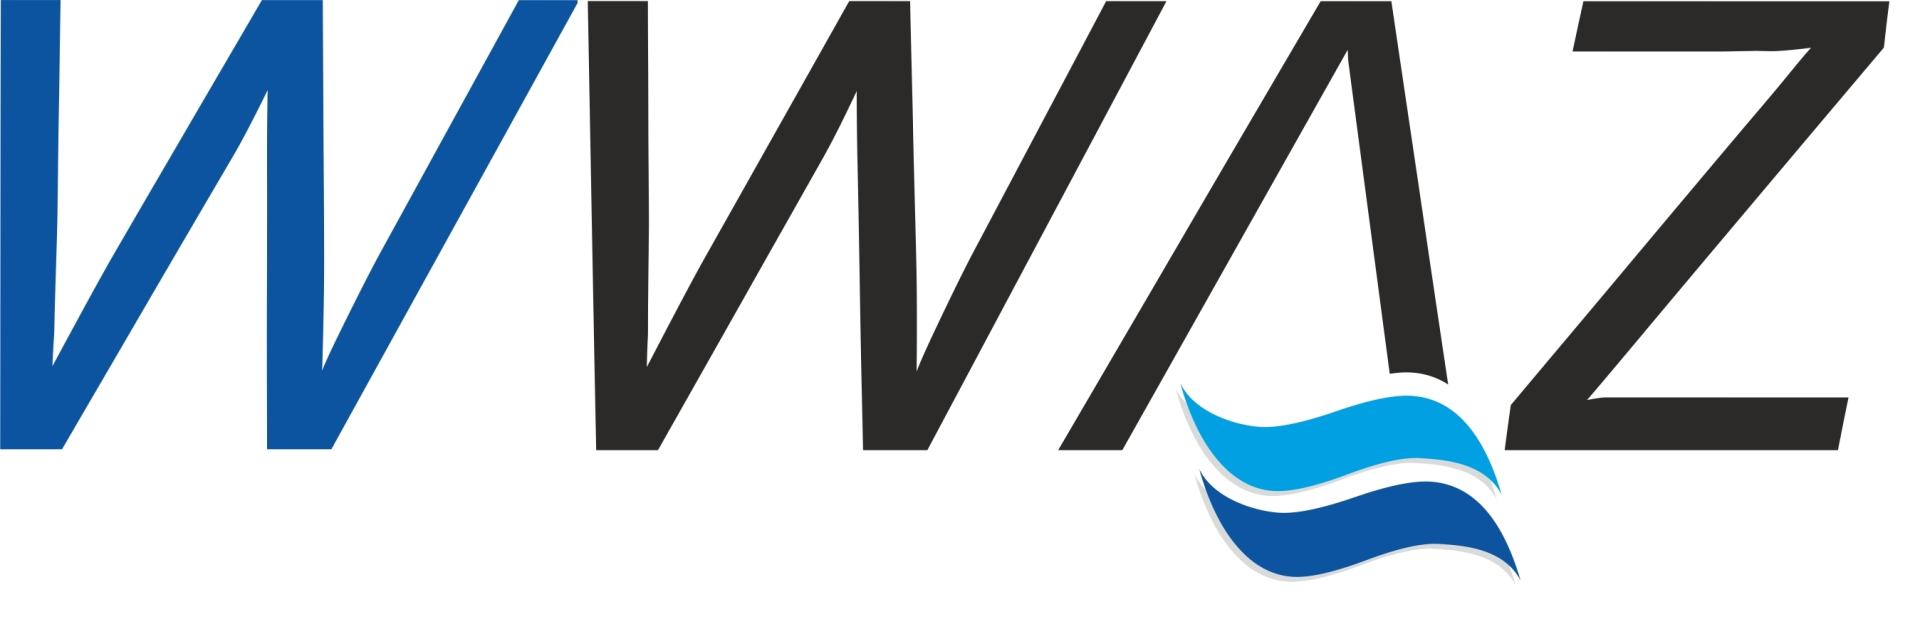 WWAZ-Logo